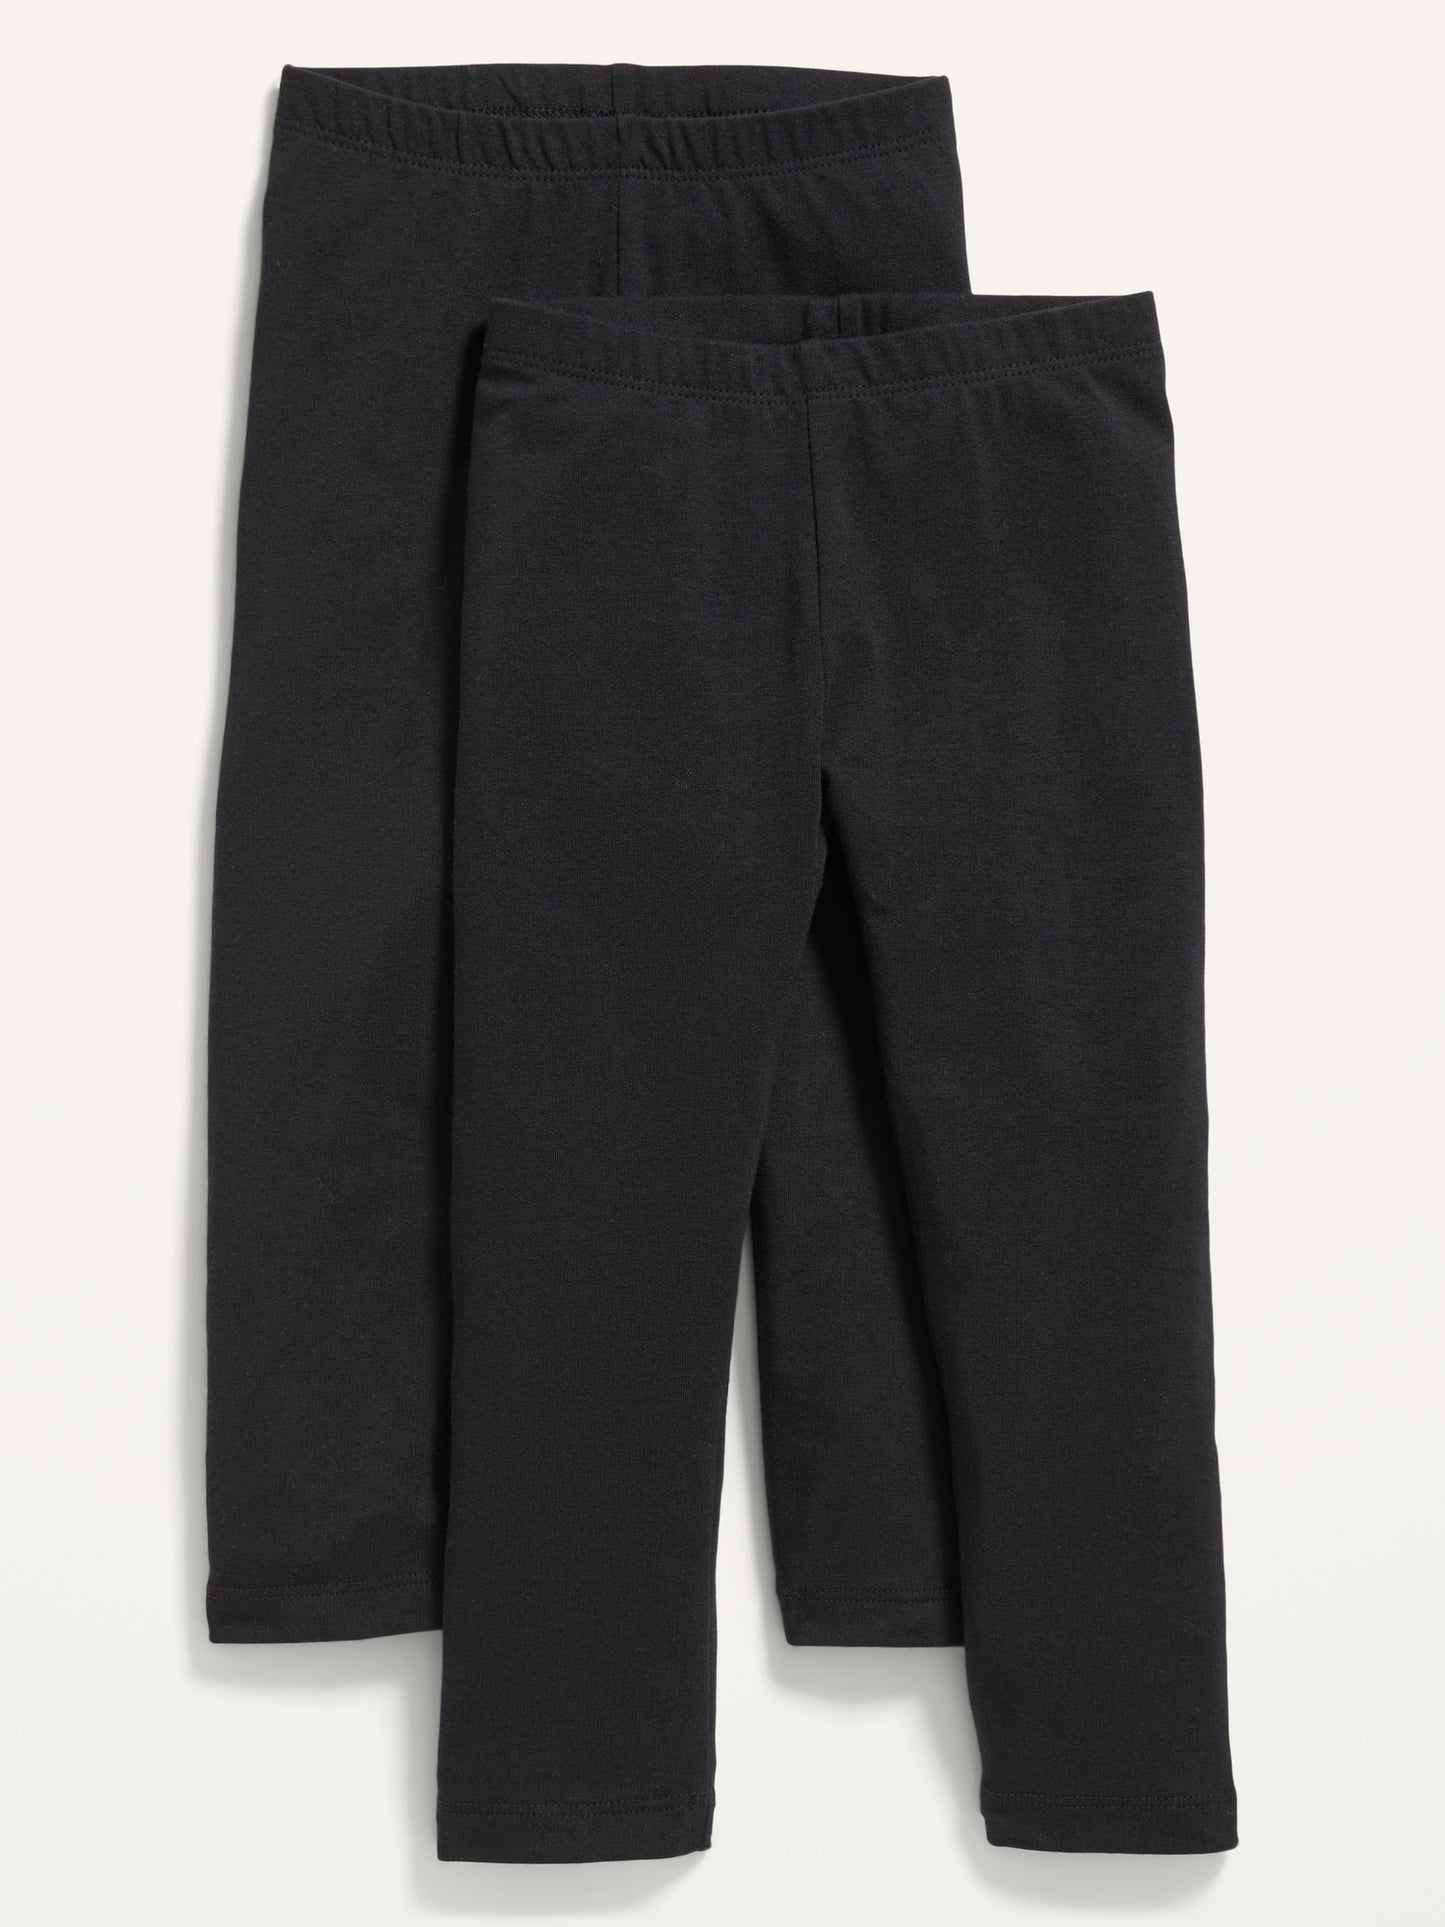 ON - Exclusivo de la Tienda en Línea - Pack de 2 leggings largos para niñas pequeñas - Black Jack